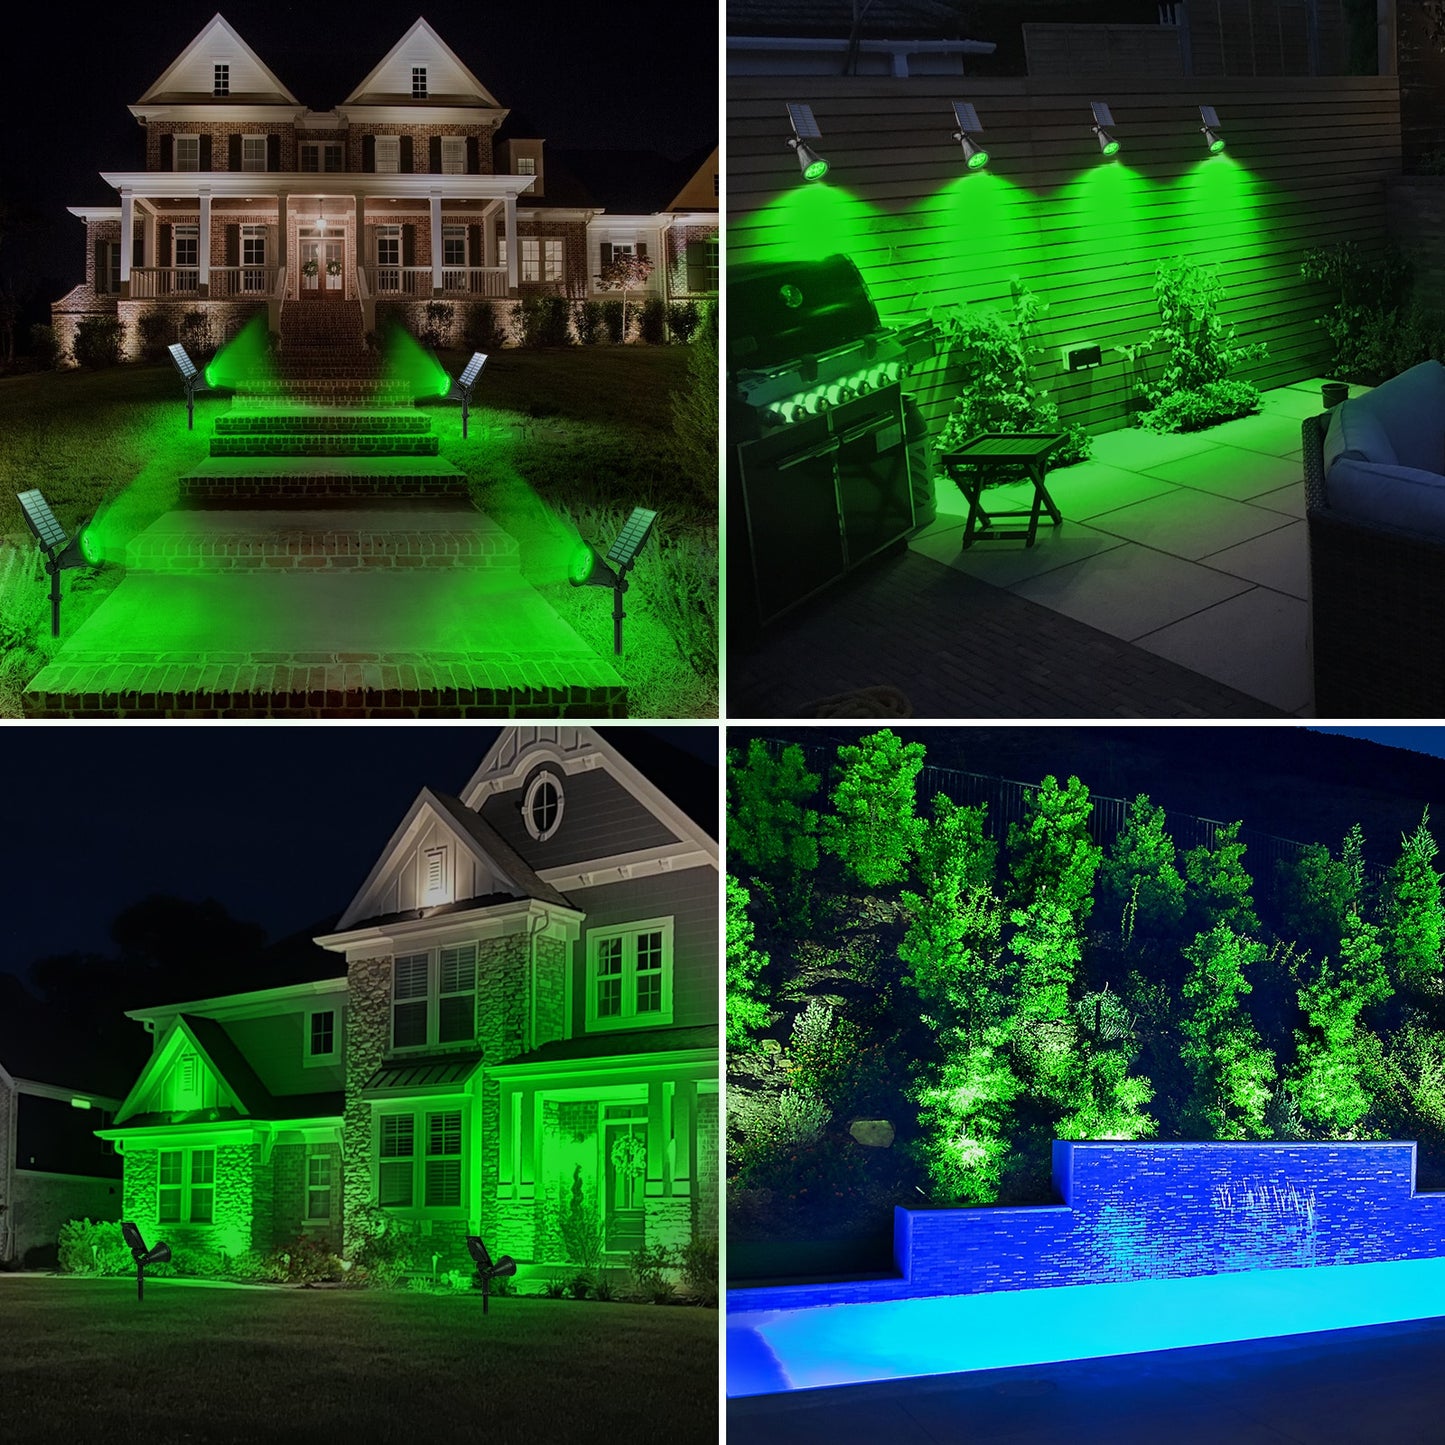 Green Solar Spotlights - Waterproof LED Lights for Garden Walls